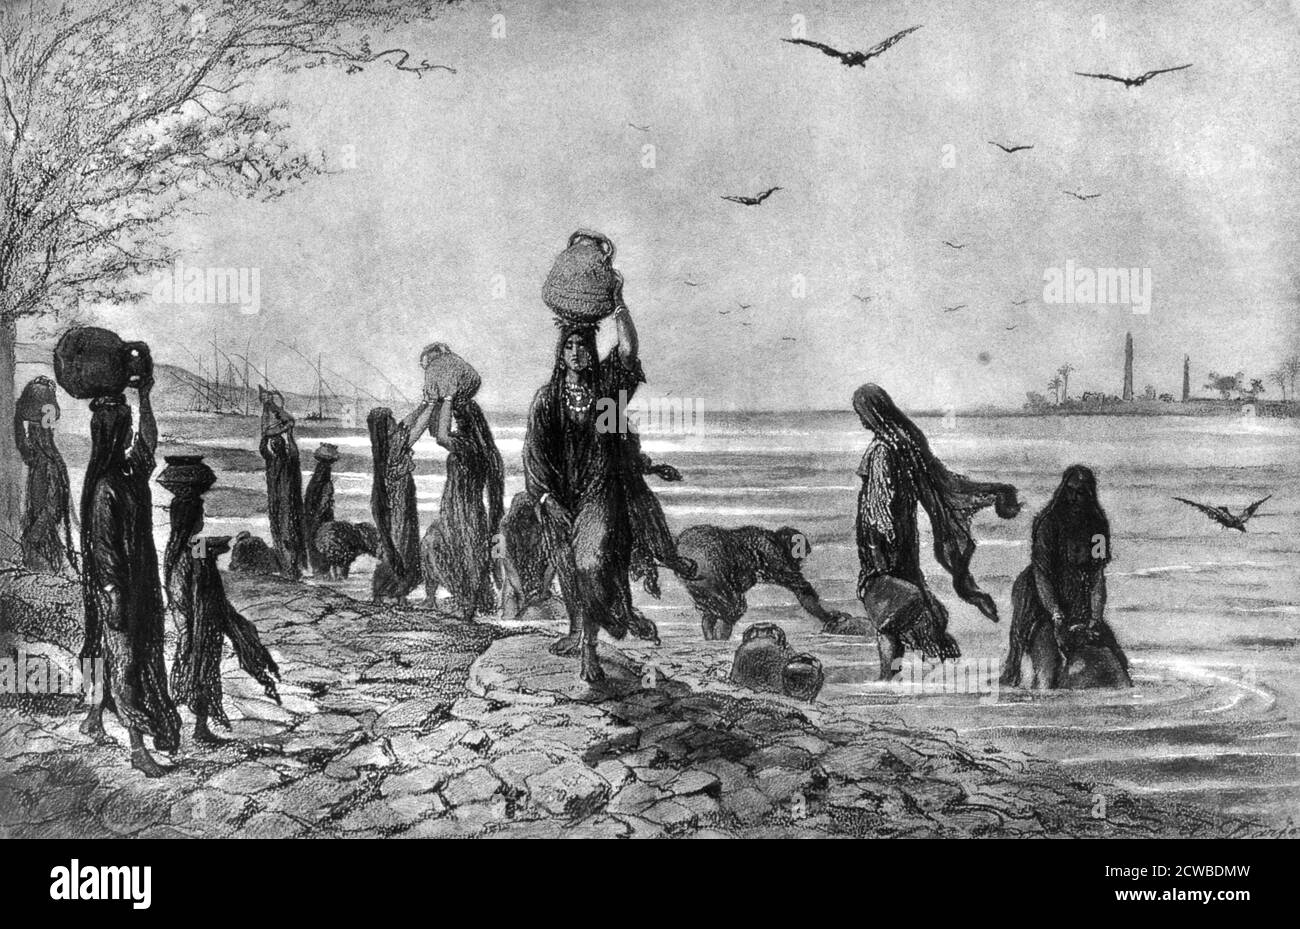 Frauen Fellahs am Rande des Nils', 1872. Fellah ist das arabische Wort für einen Landarbeiter oder Bauern. Ein Druck aus Kairo und Hochägypten. Von dem französischen Künstler Alfred-Henri Darjou. Stockfoto